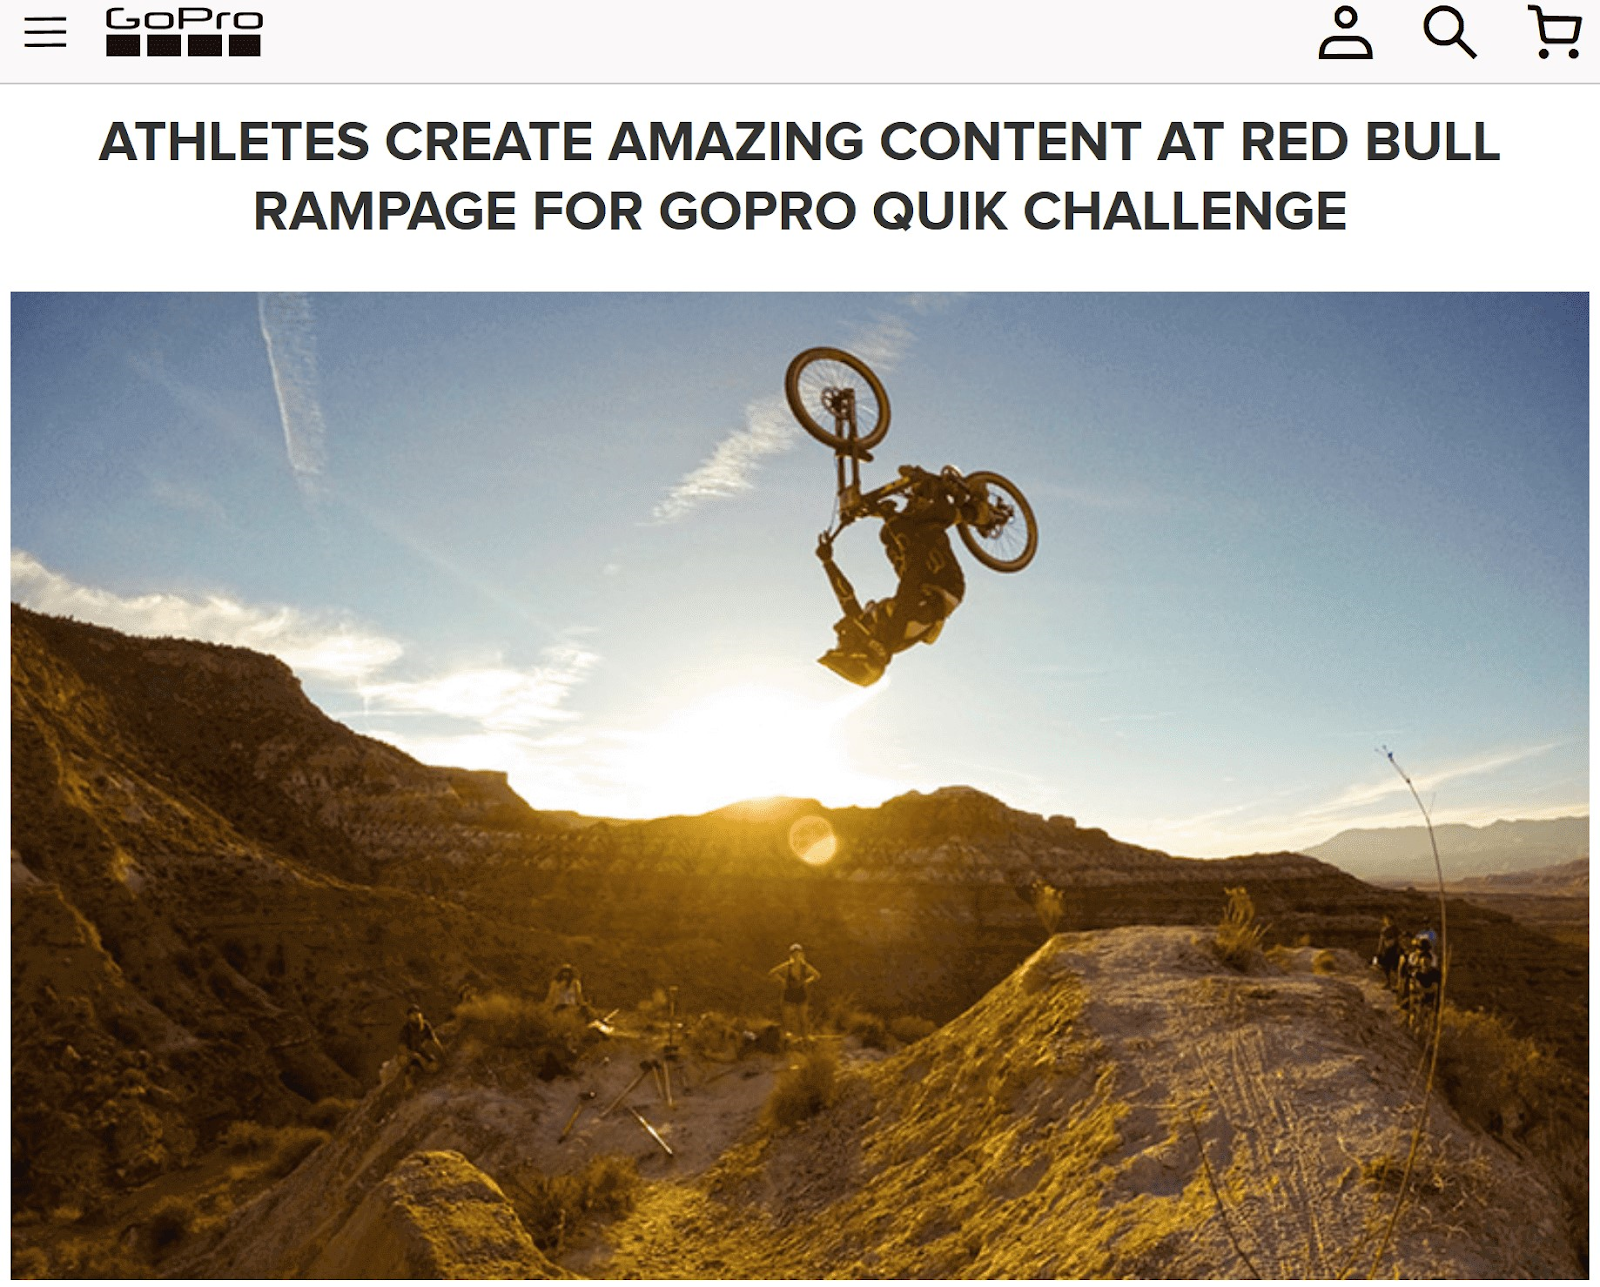 Article de GoPro "Les athlètes créent un contenu incroyable lors du Red Bull Rampage pour le défi rapide GoPro"